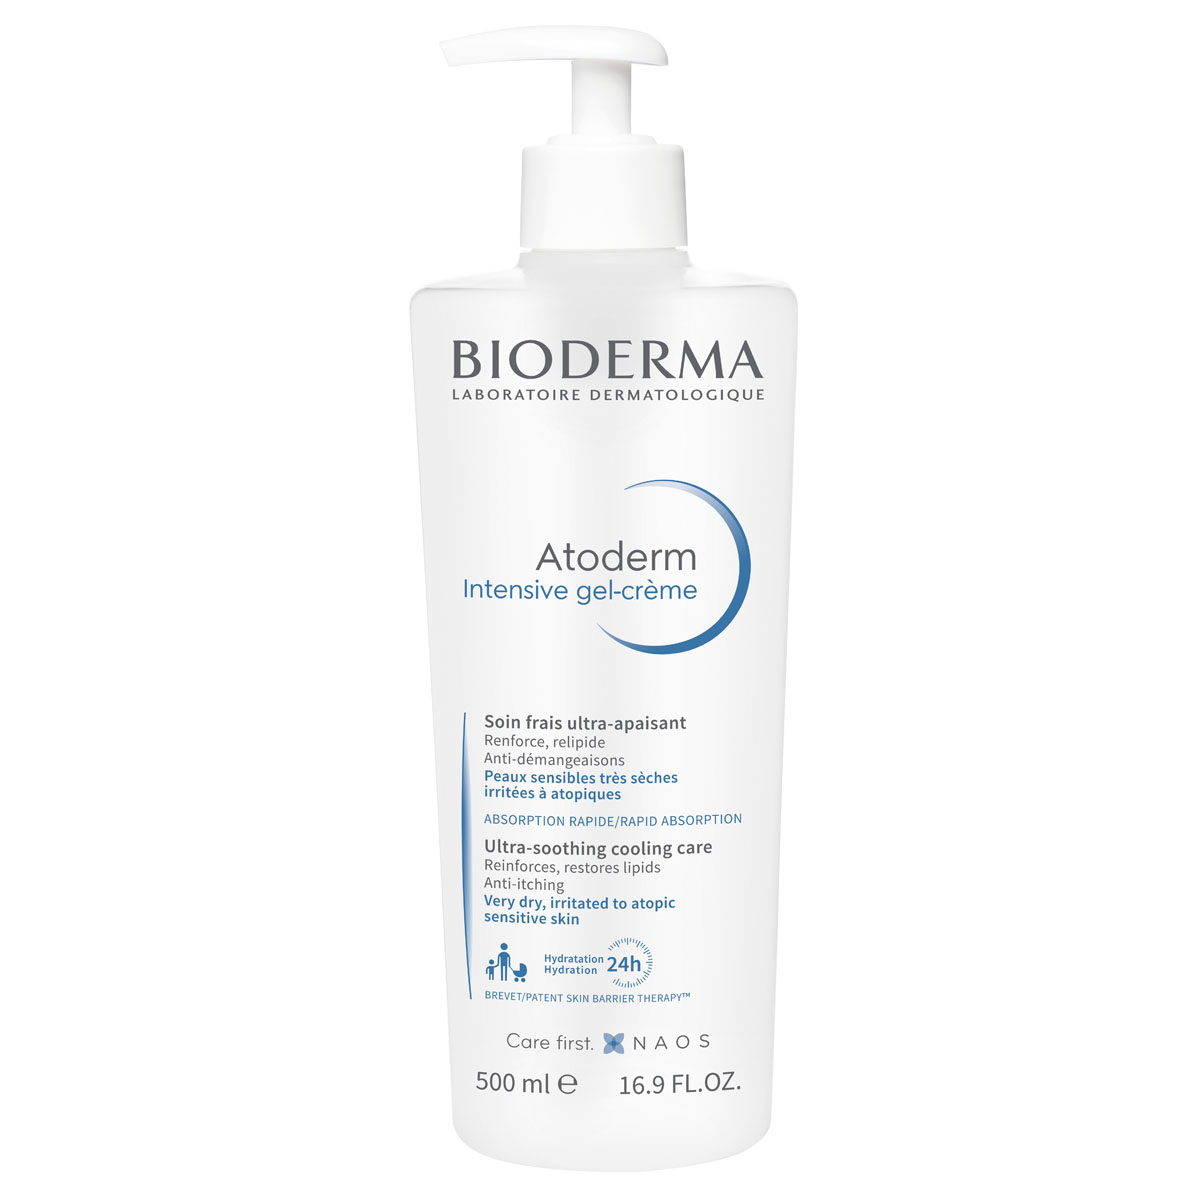 Bioderma Гель-крем Интенсив, 500 мл (Bioderma, Atoderm) гель для лица bioderma успокаивающий гель крем для сухой раздраженной и атопичной кожи лица и тела atoderm